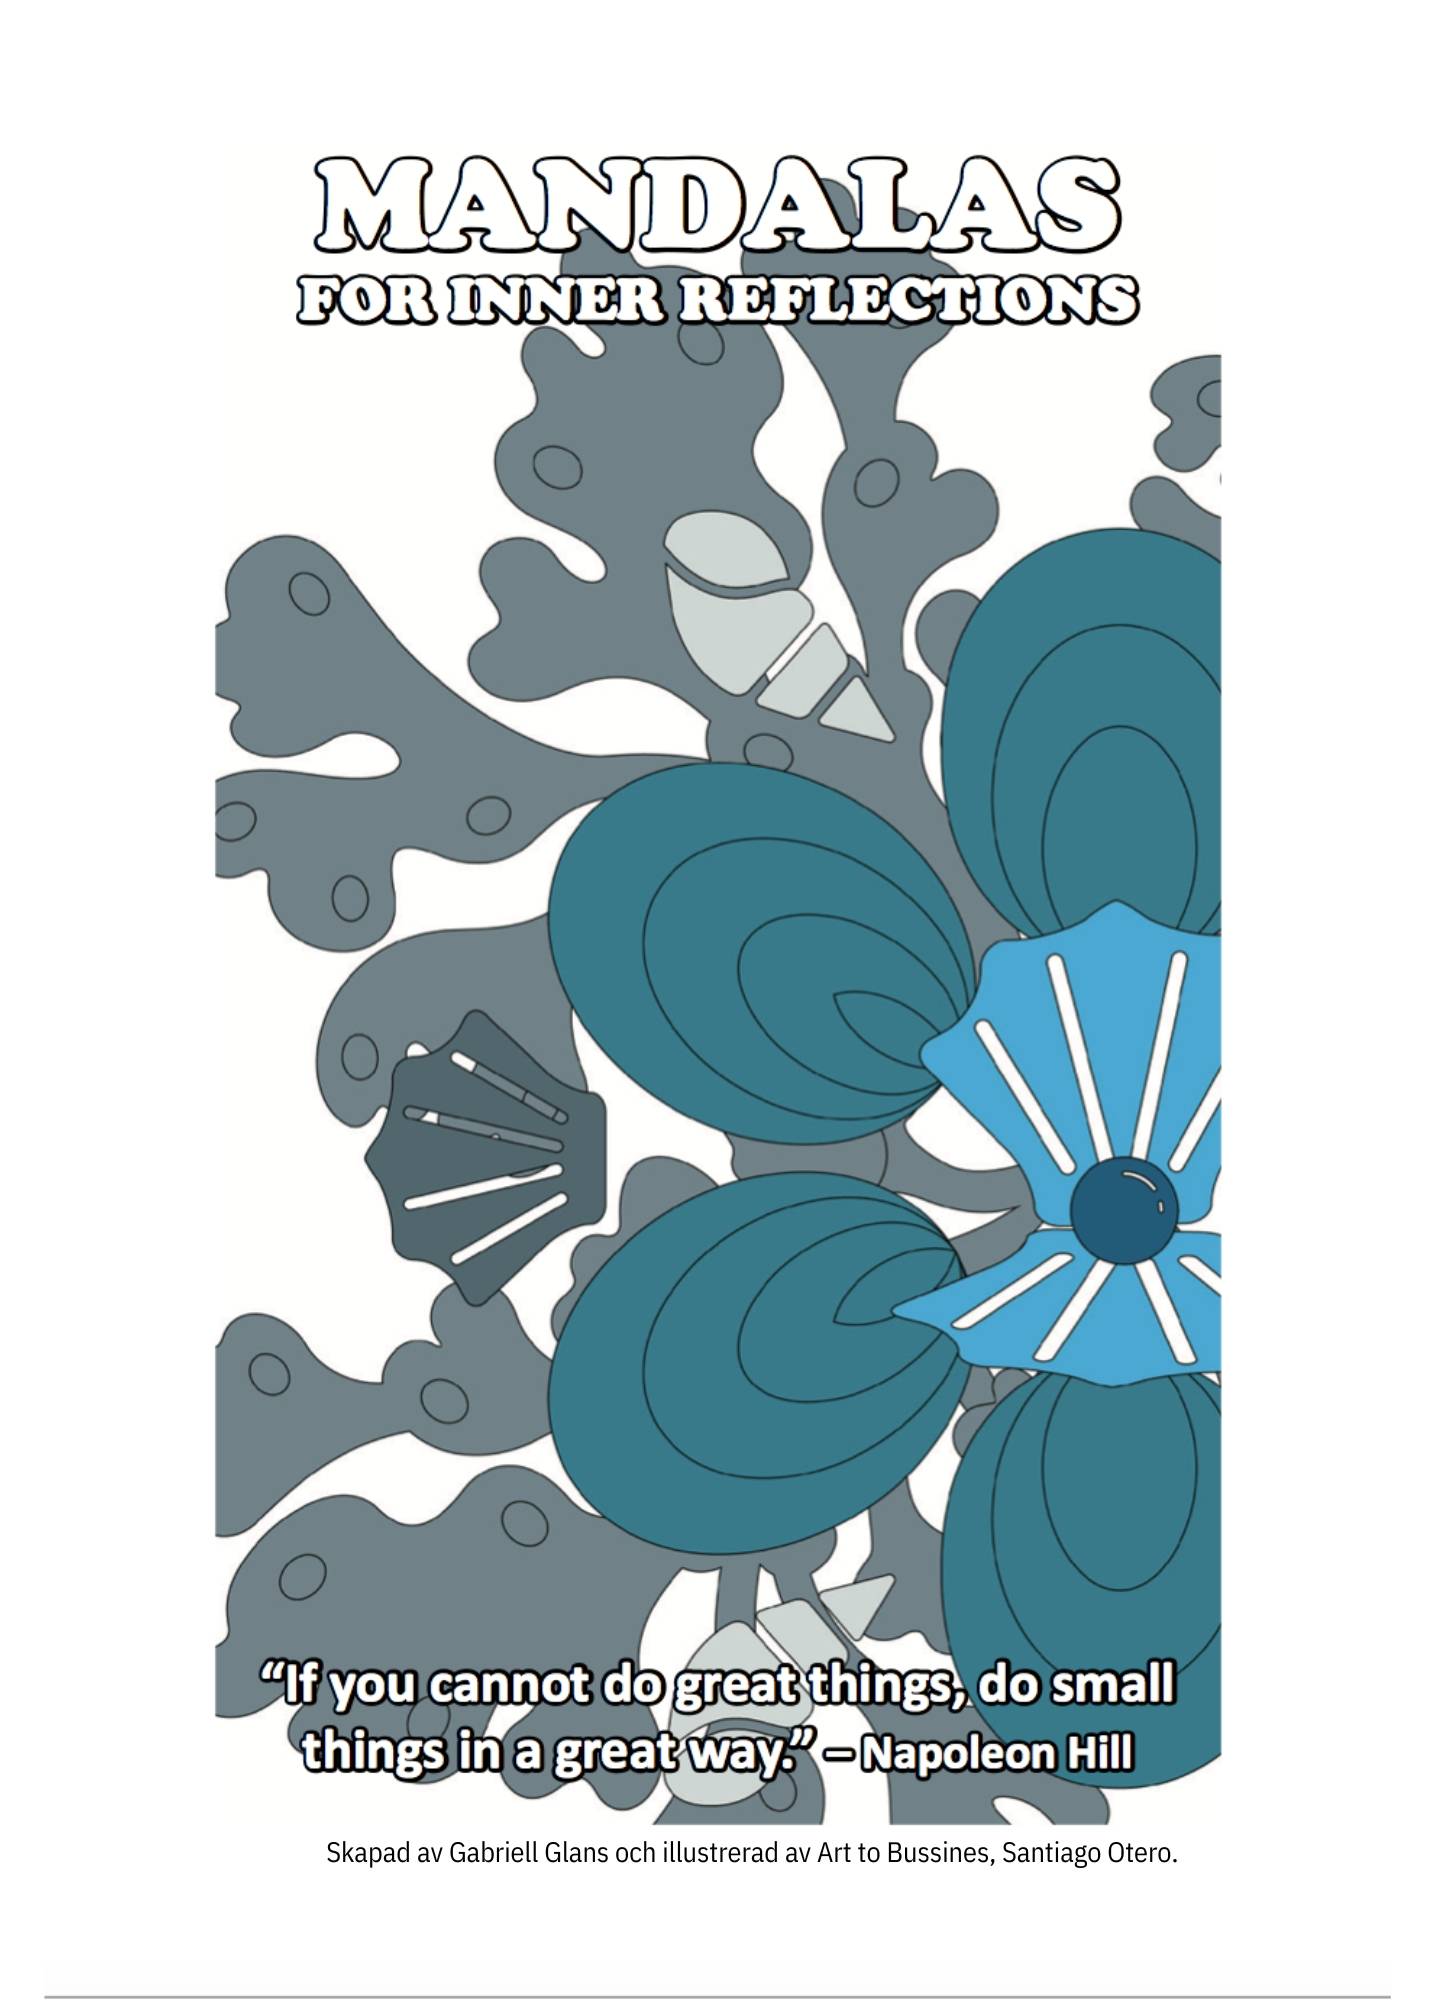 Mandalas: For inner reflections